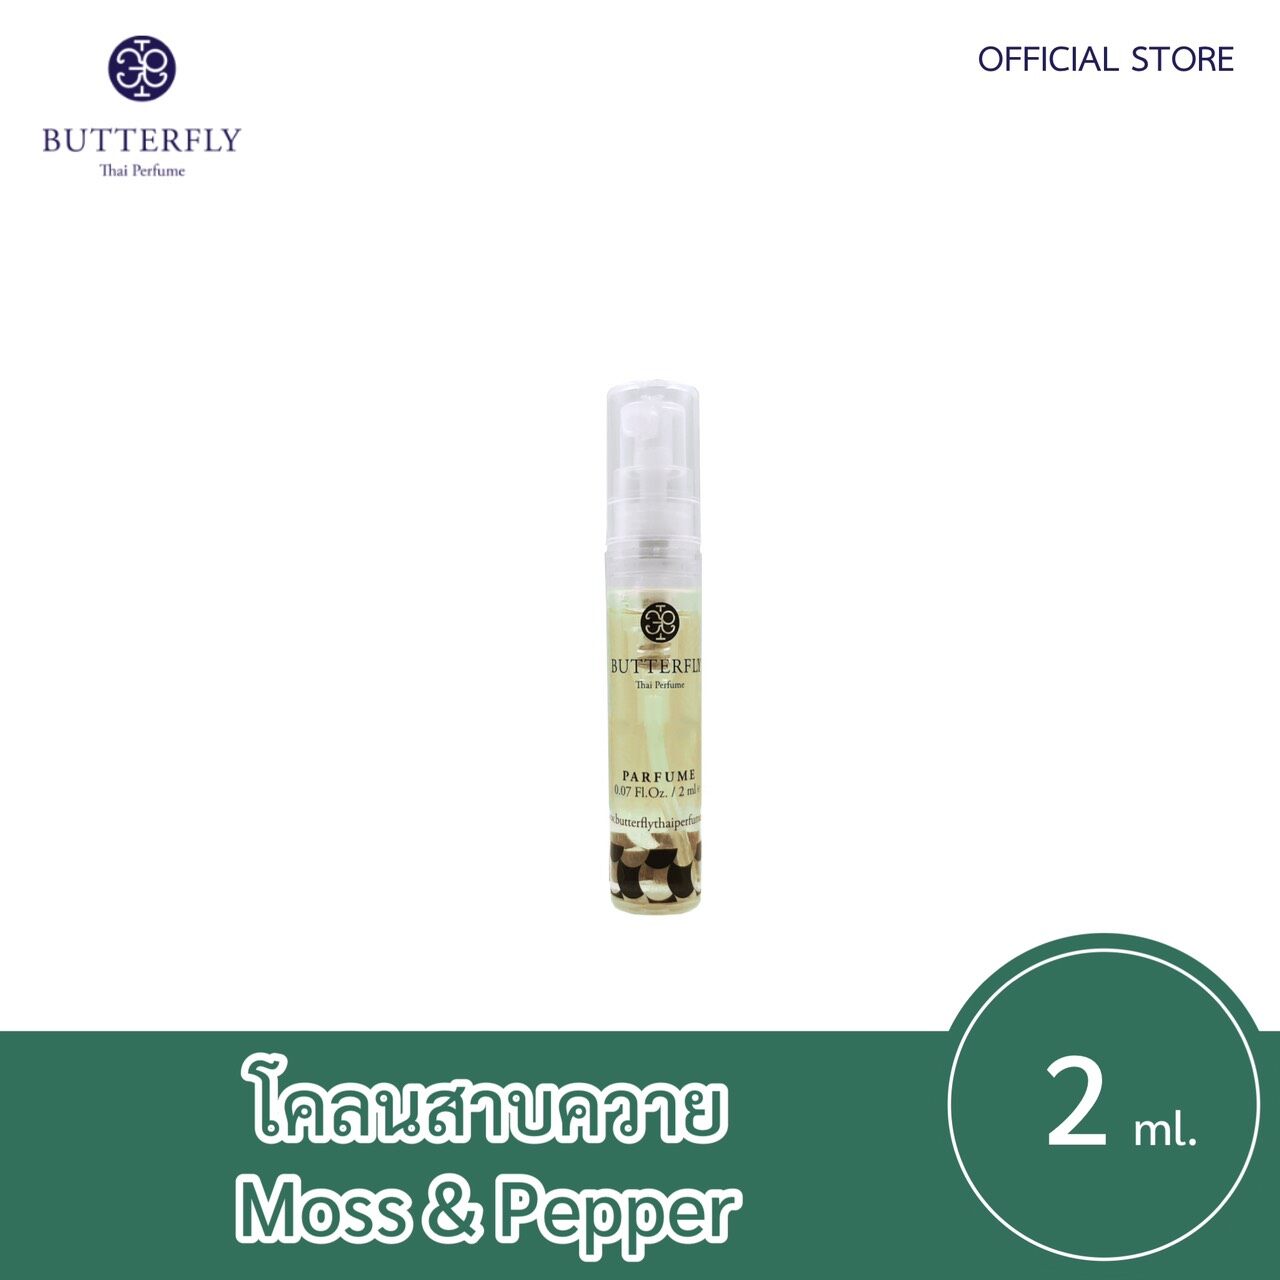 Butterfly Thai Perfume - น้ำหอมบัตเตอร์ฟลาย ไทย เพอร์ฟูม  ขนาดทดลอง 2ml.  กลิ่น โคลนสาบควายปริมาณ (มล.) 2